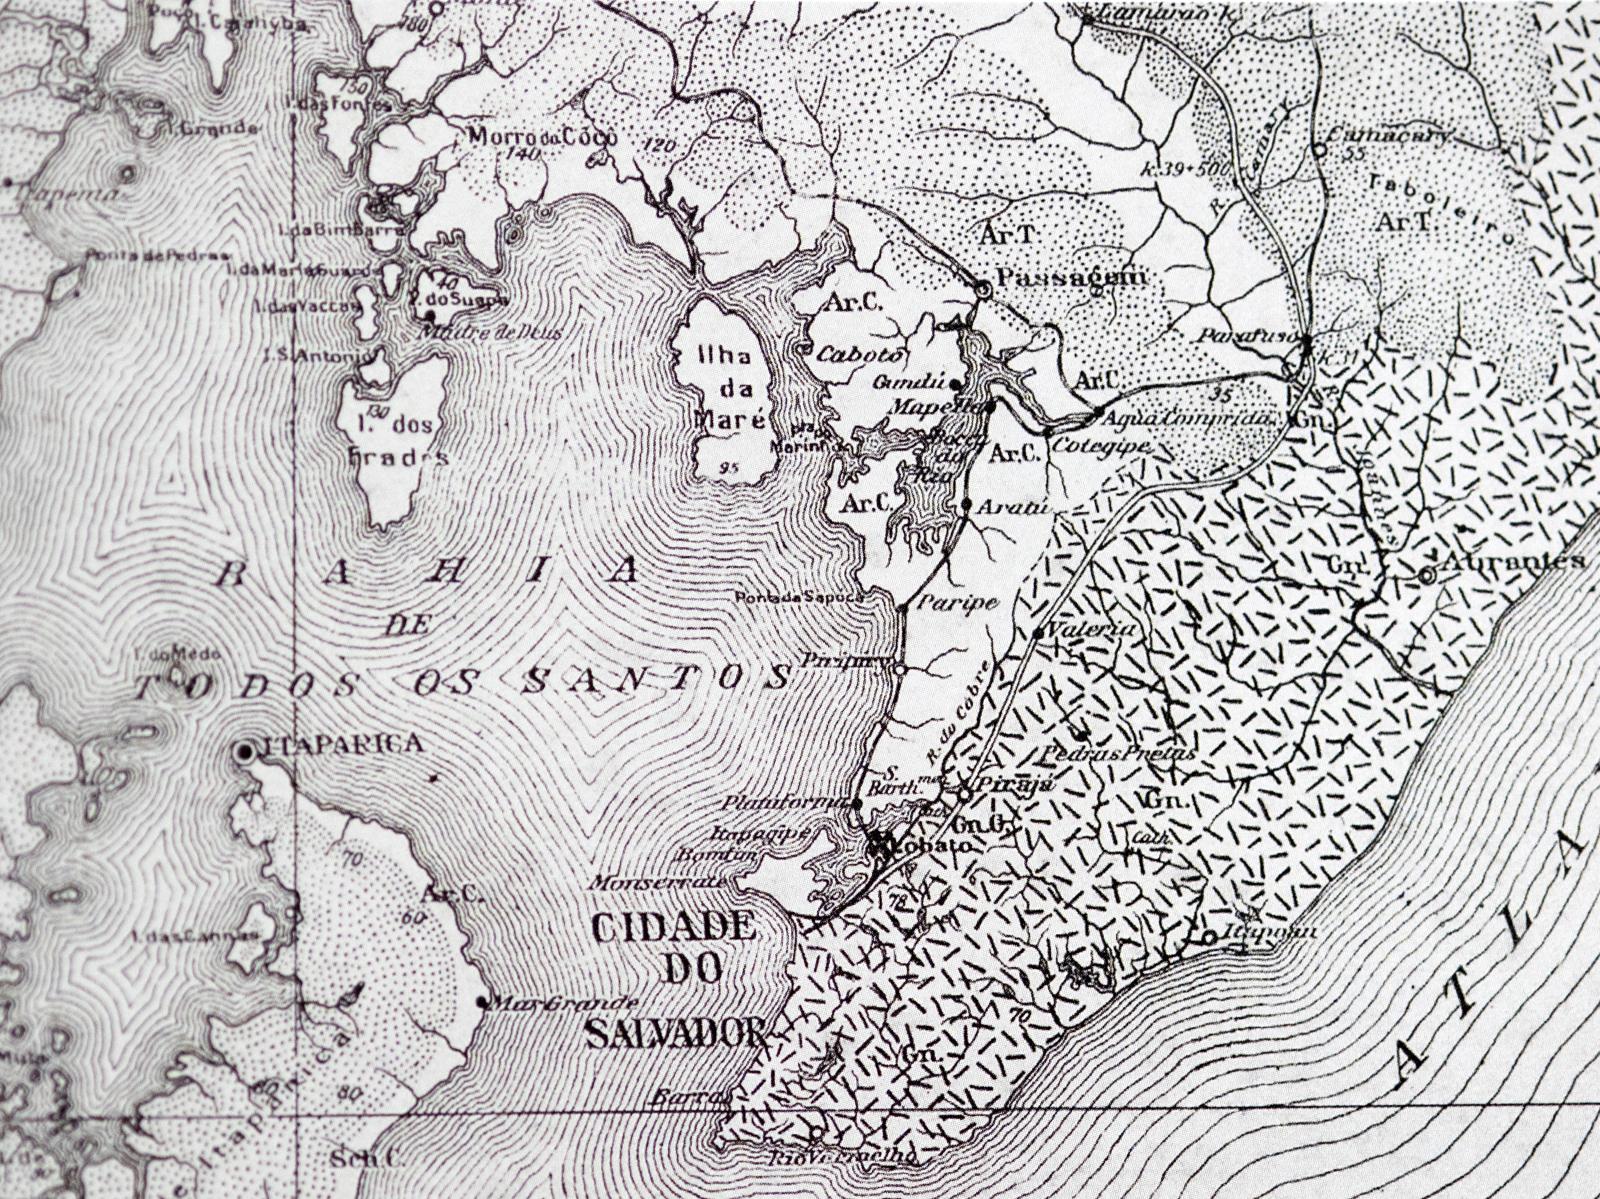 A detail of an historical map of the Todos os Santos Bay Salvador Brazil